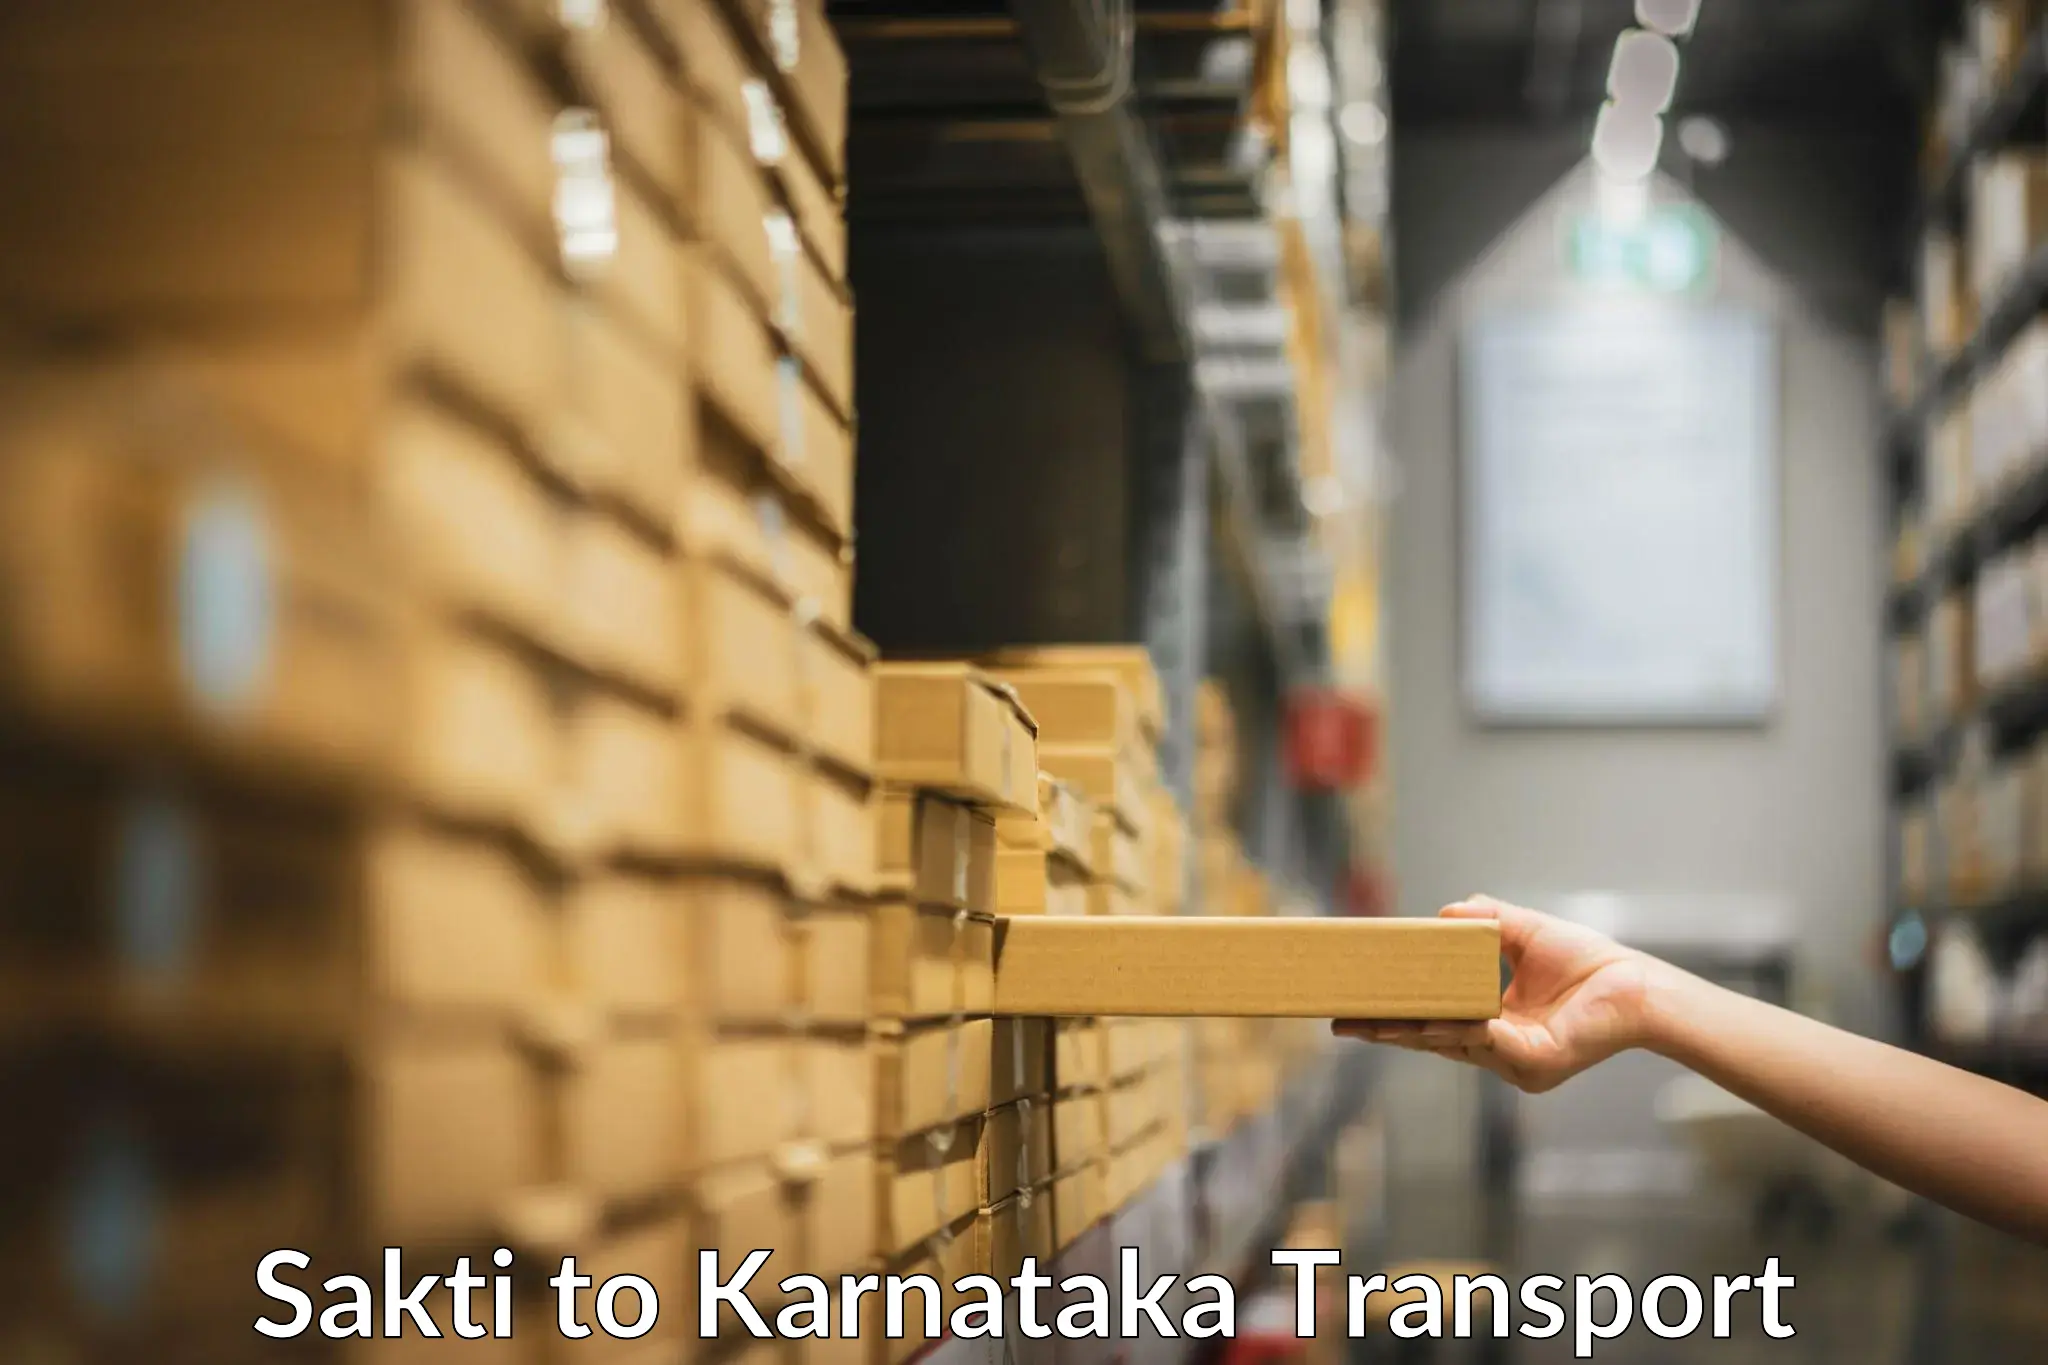 Pick up transport service Sakti to Kanjarakatte